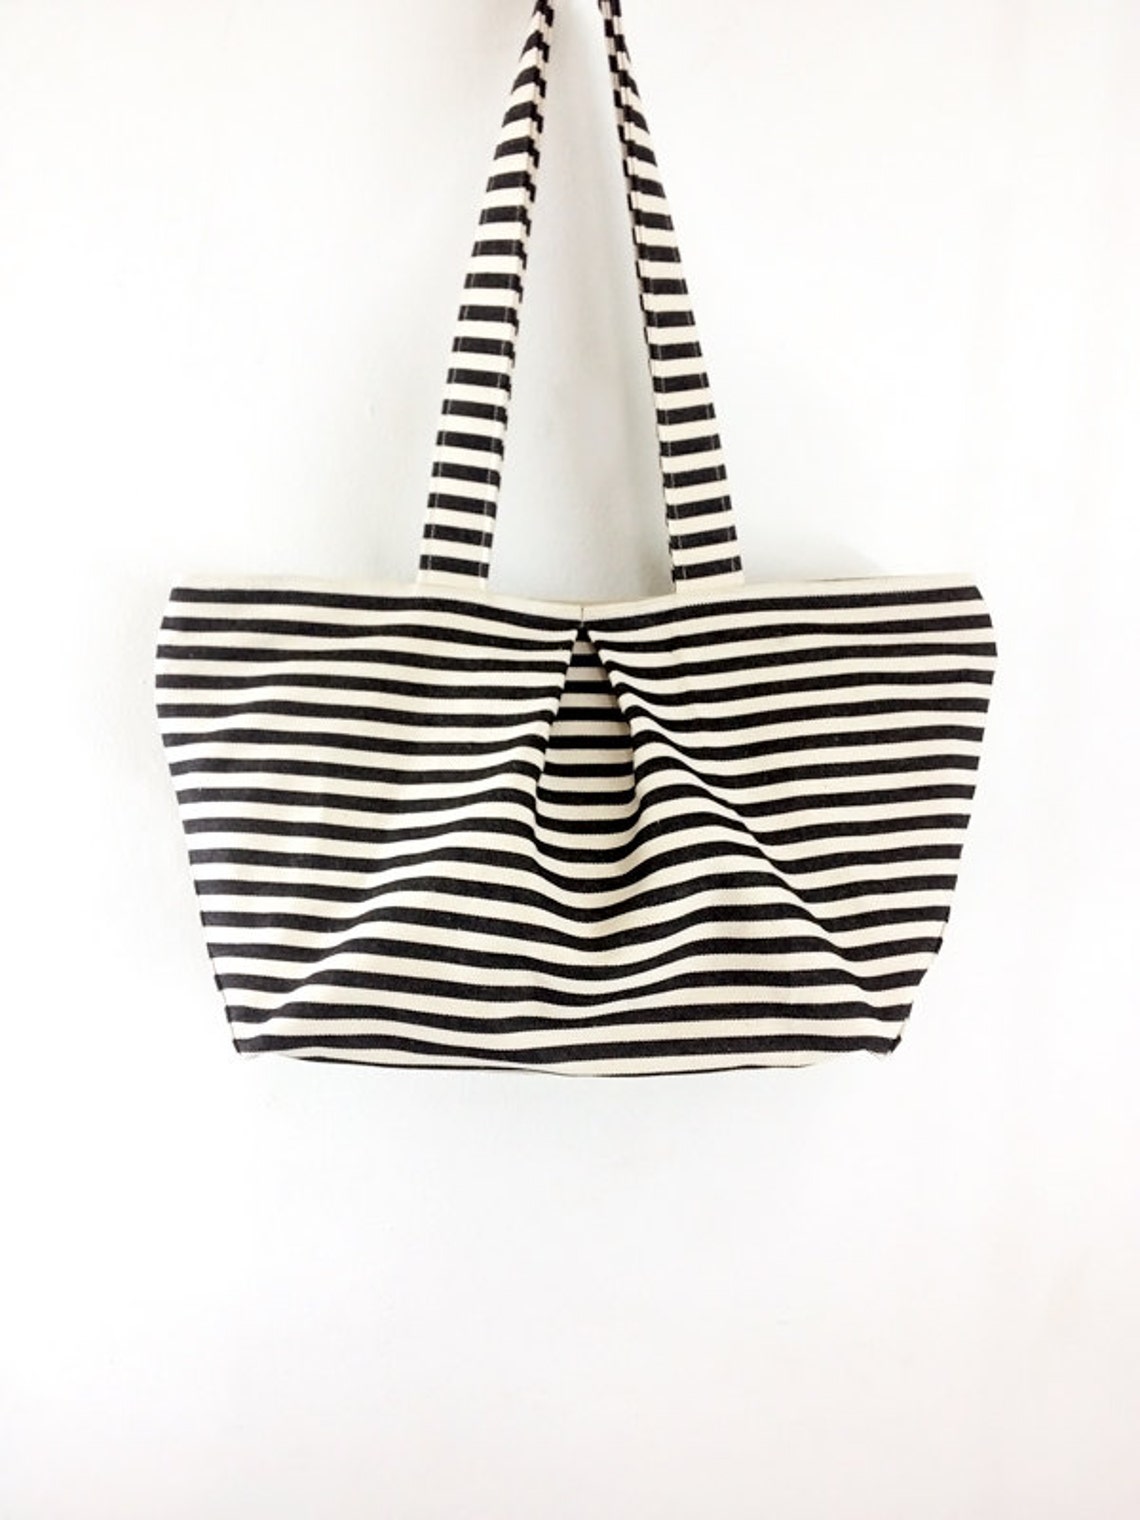 Striped Denim Bag Cotton Bag Canvas Bag Diaper Bag Shoulder - Etsy